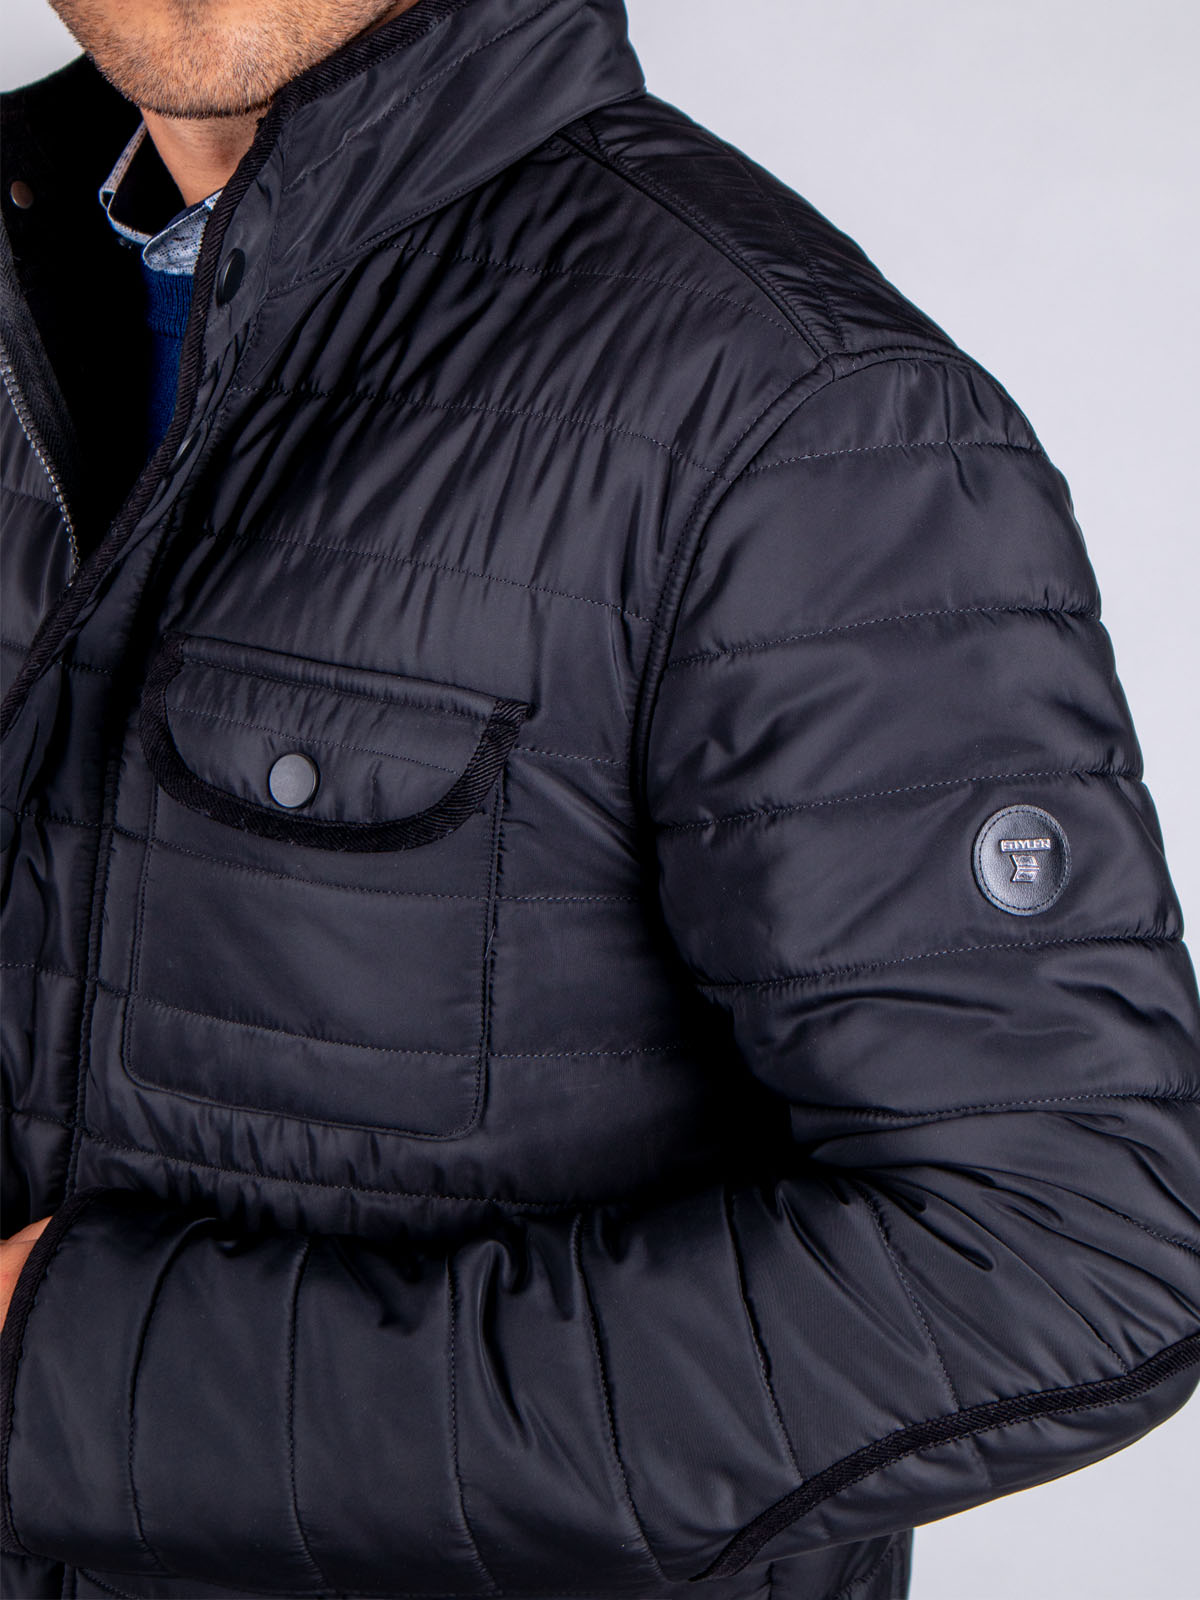 black jacket type sako - 65104 € 123.20 img4